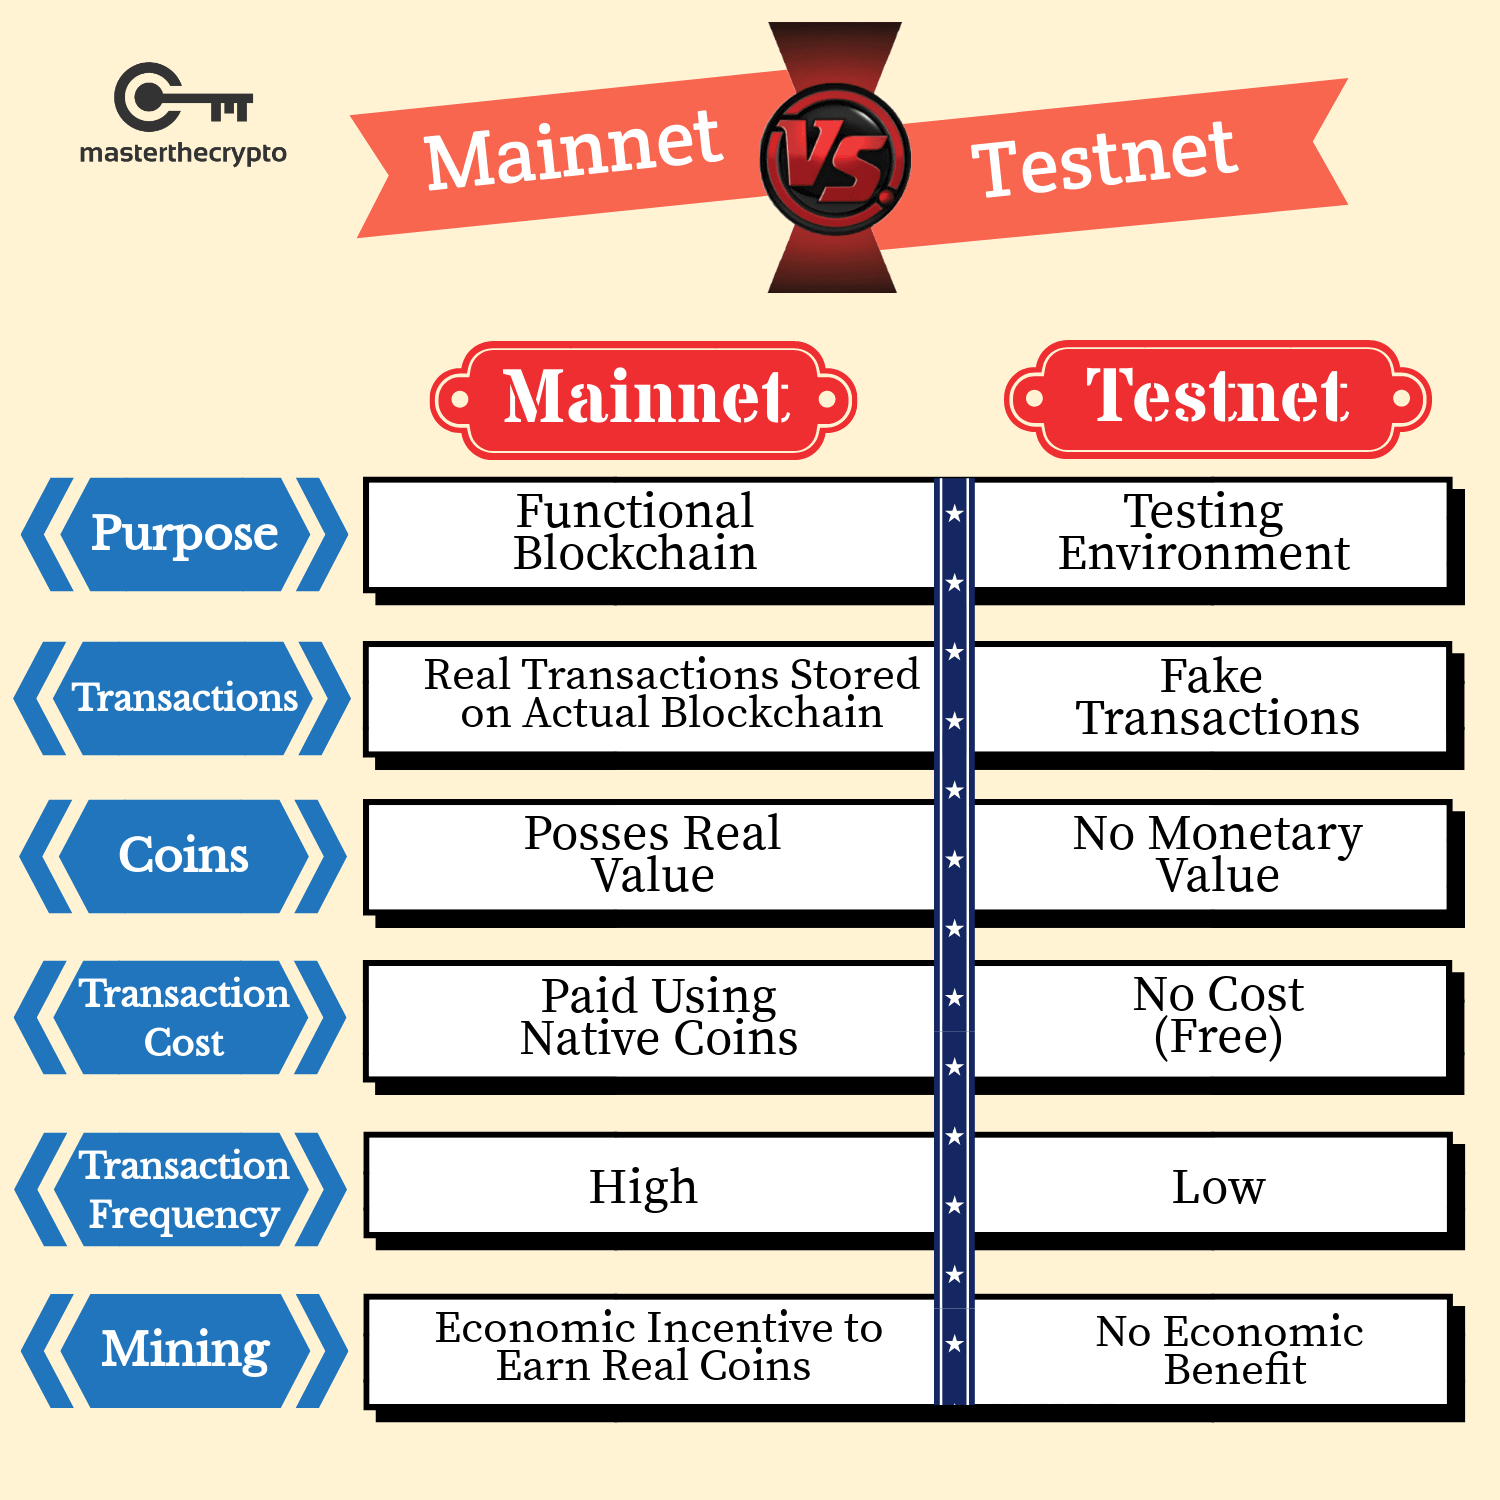 mainnet vs testnet differences